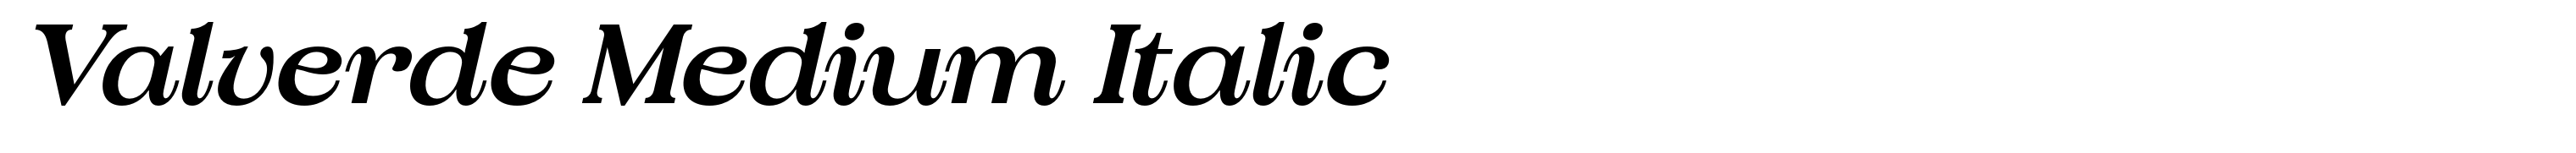 Valverde Medium Italic